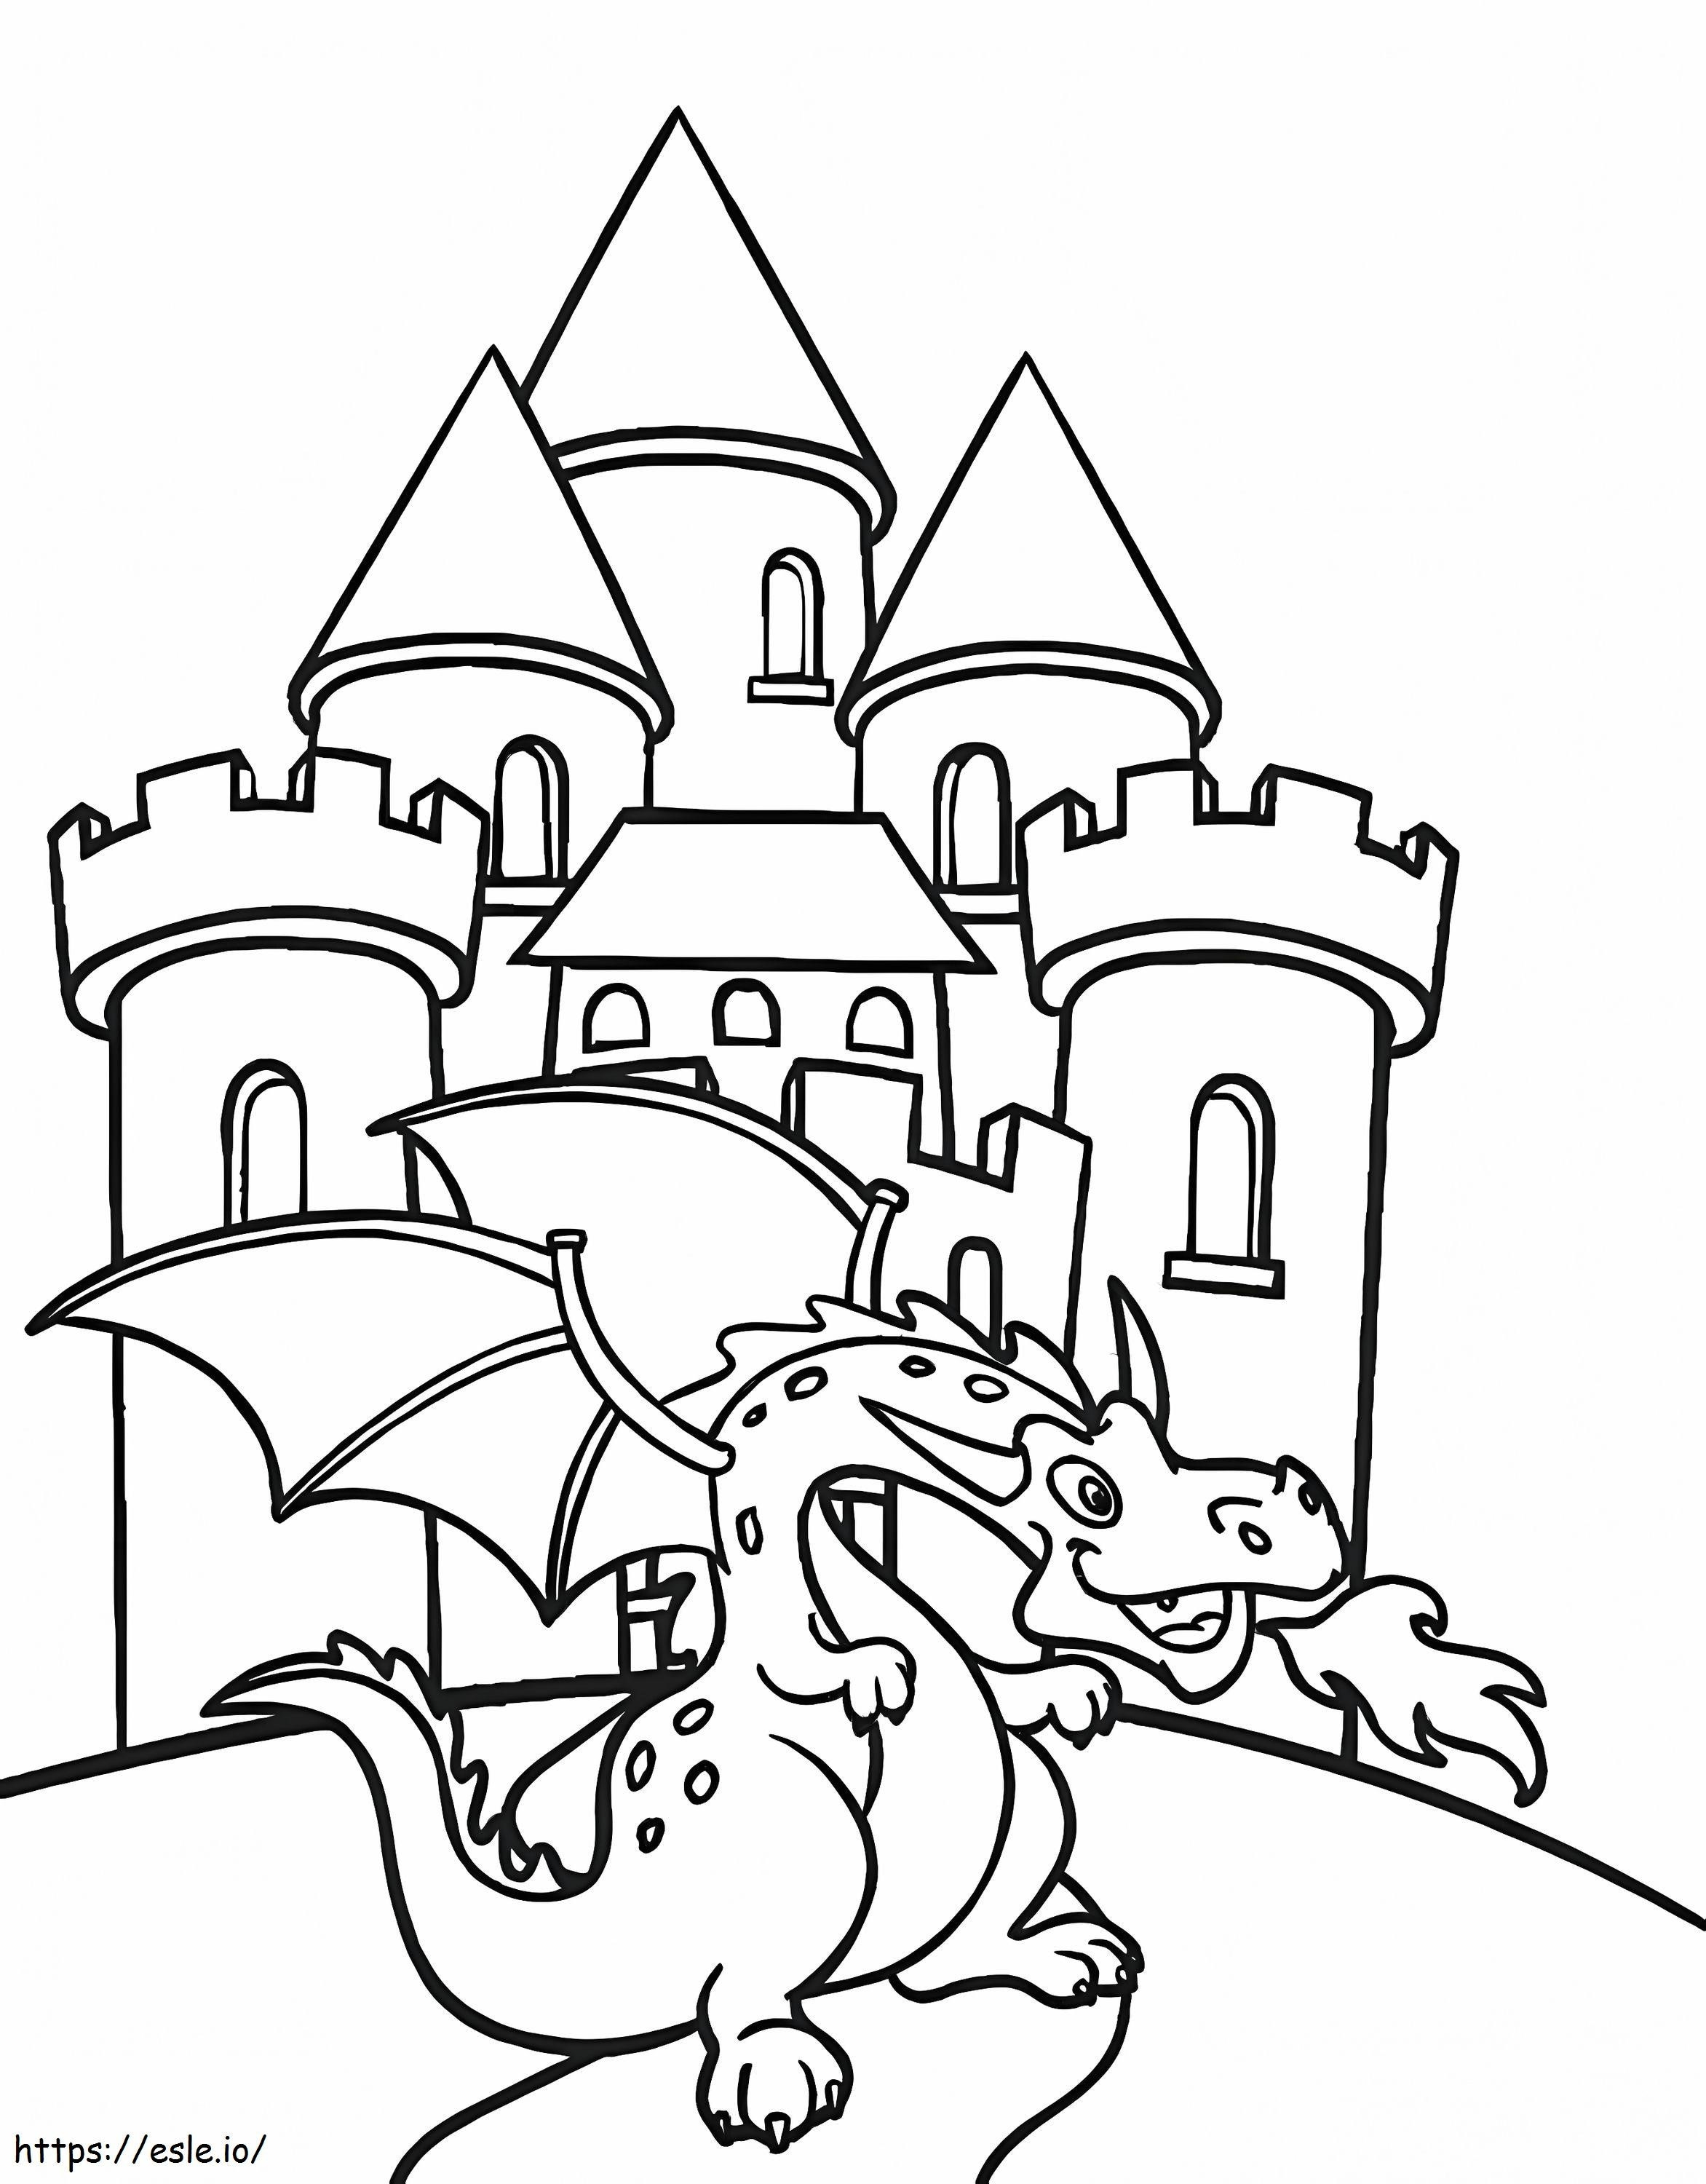 Dragão e castelo fofos para colorir